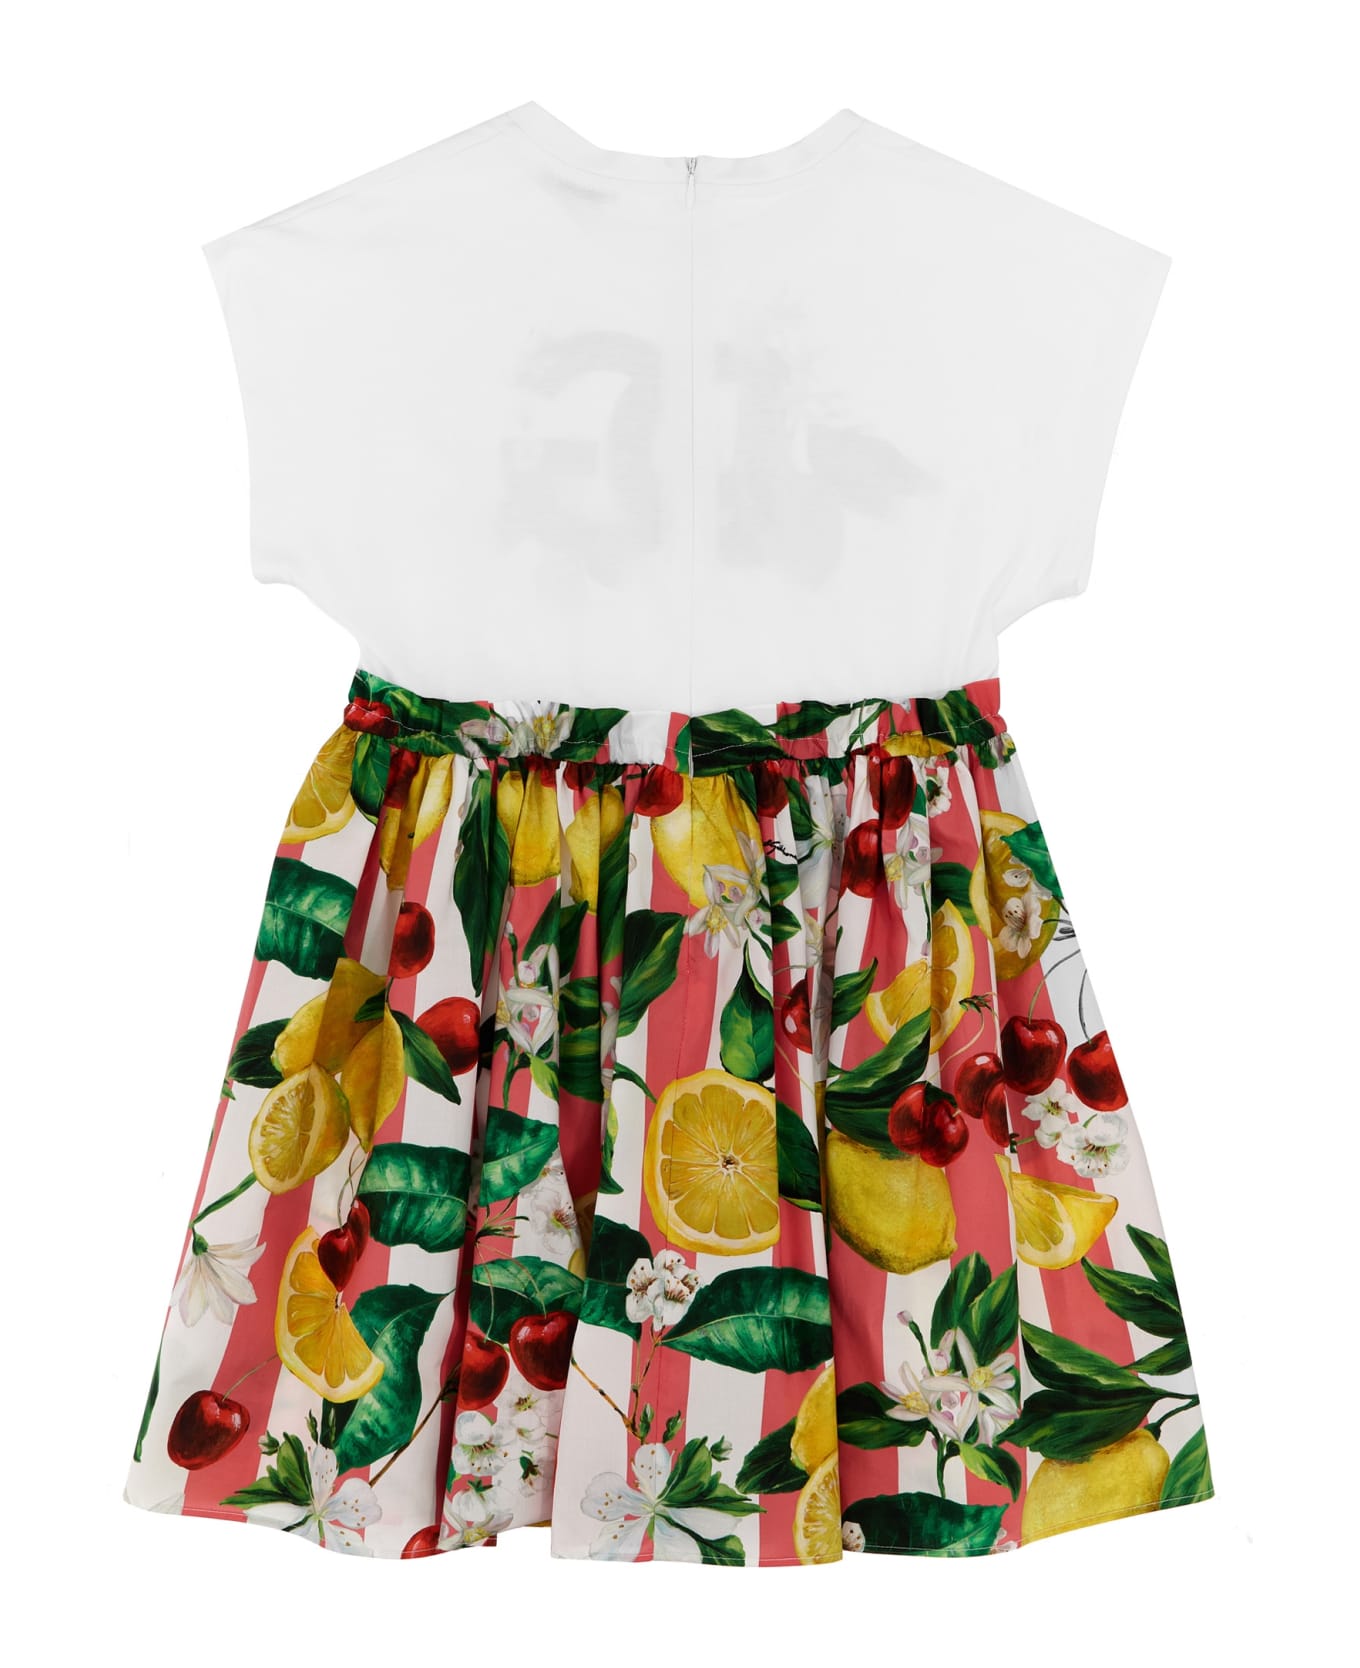 dolce & gabbana snakeskin sandal Fruit Print Dress - Multicolor